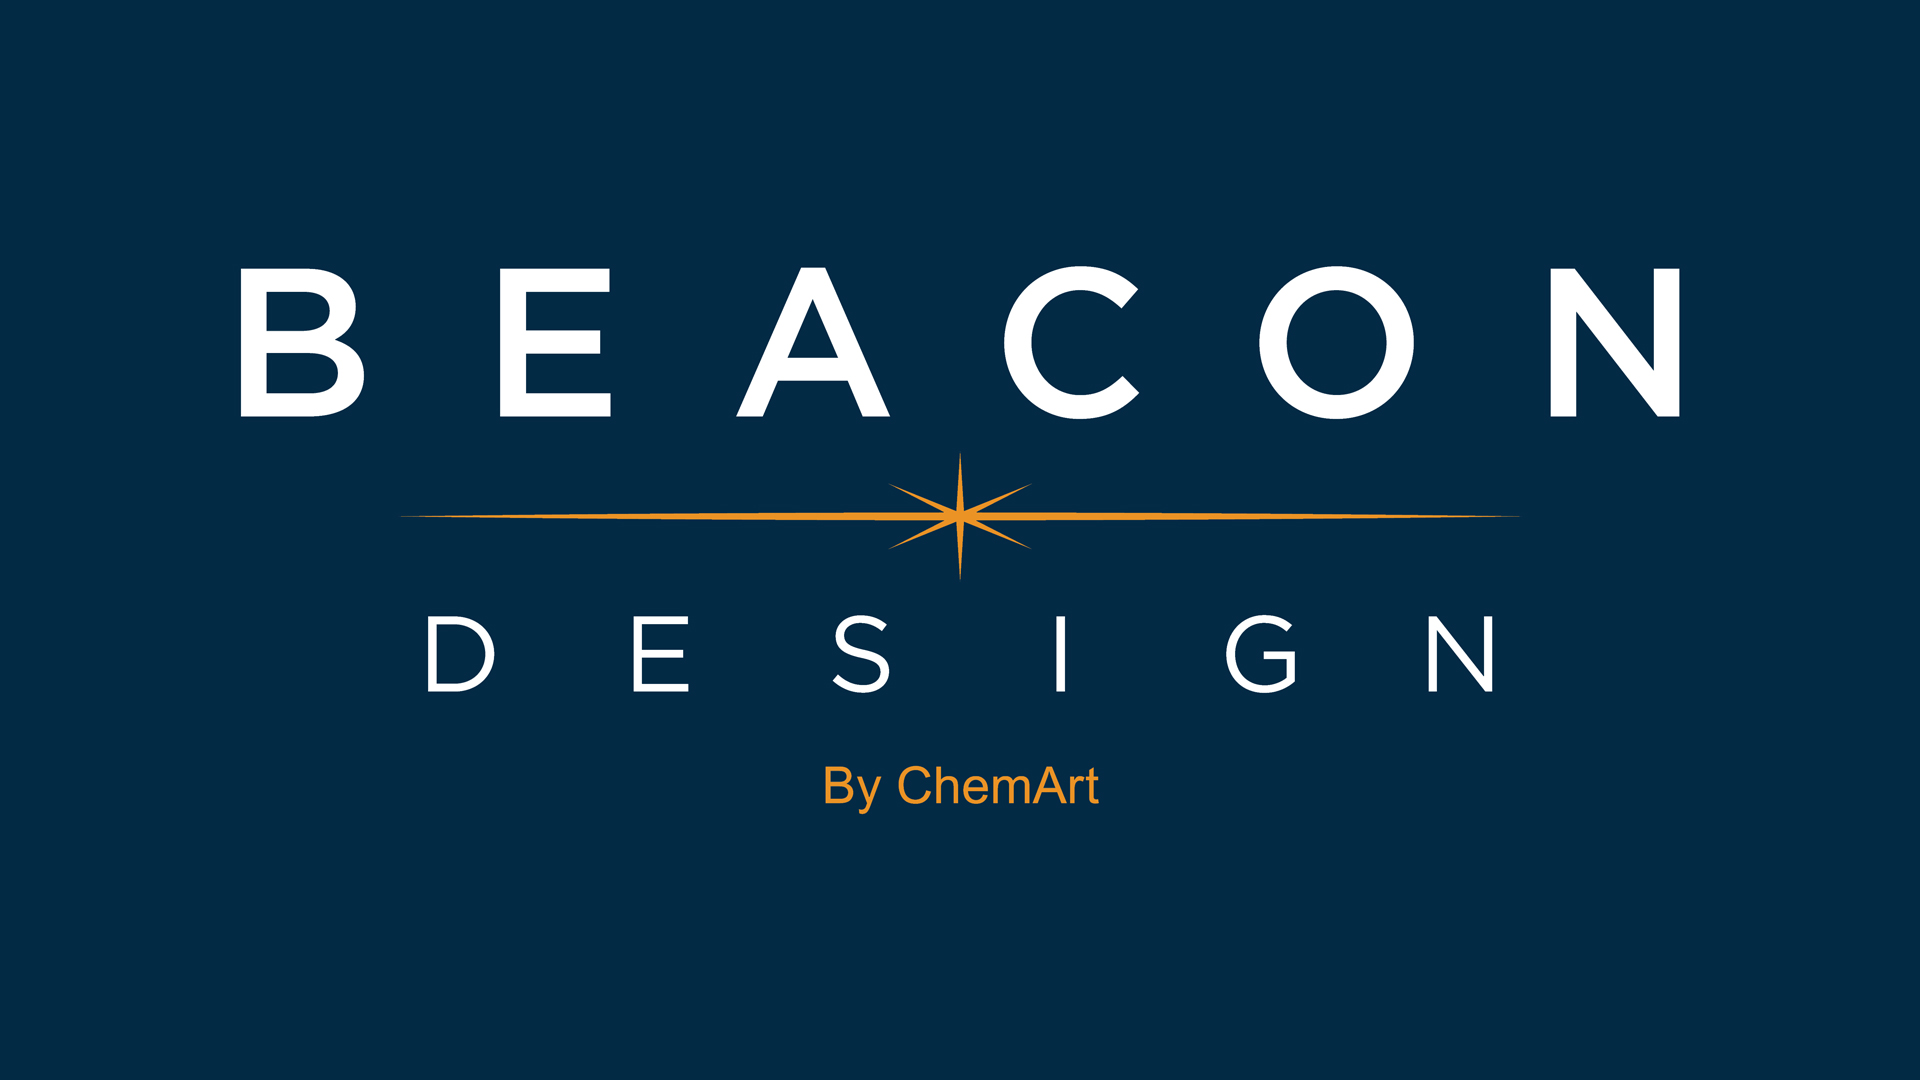 Becoming Beacon Design | Beacon Design